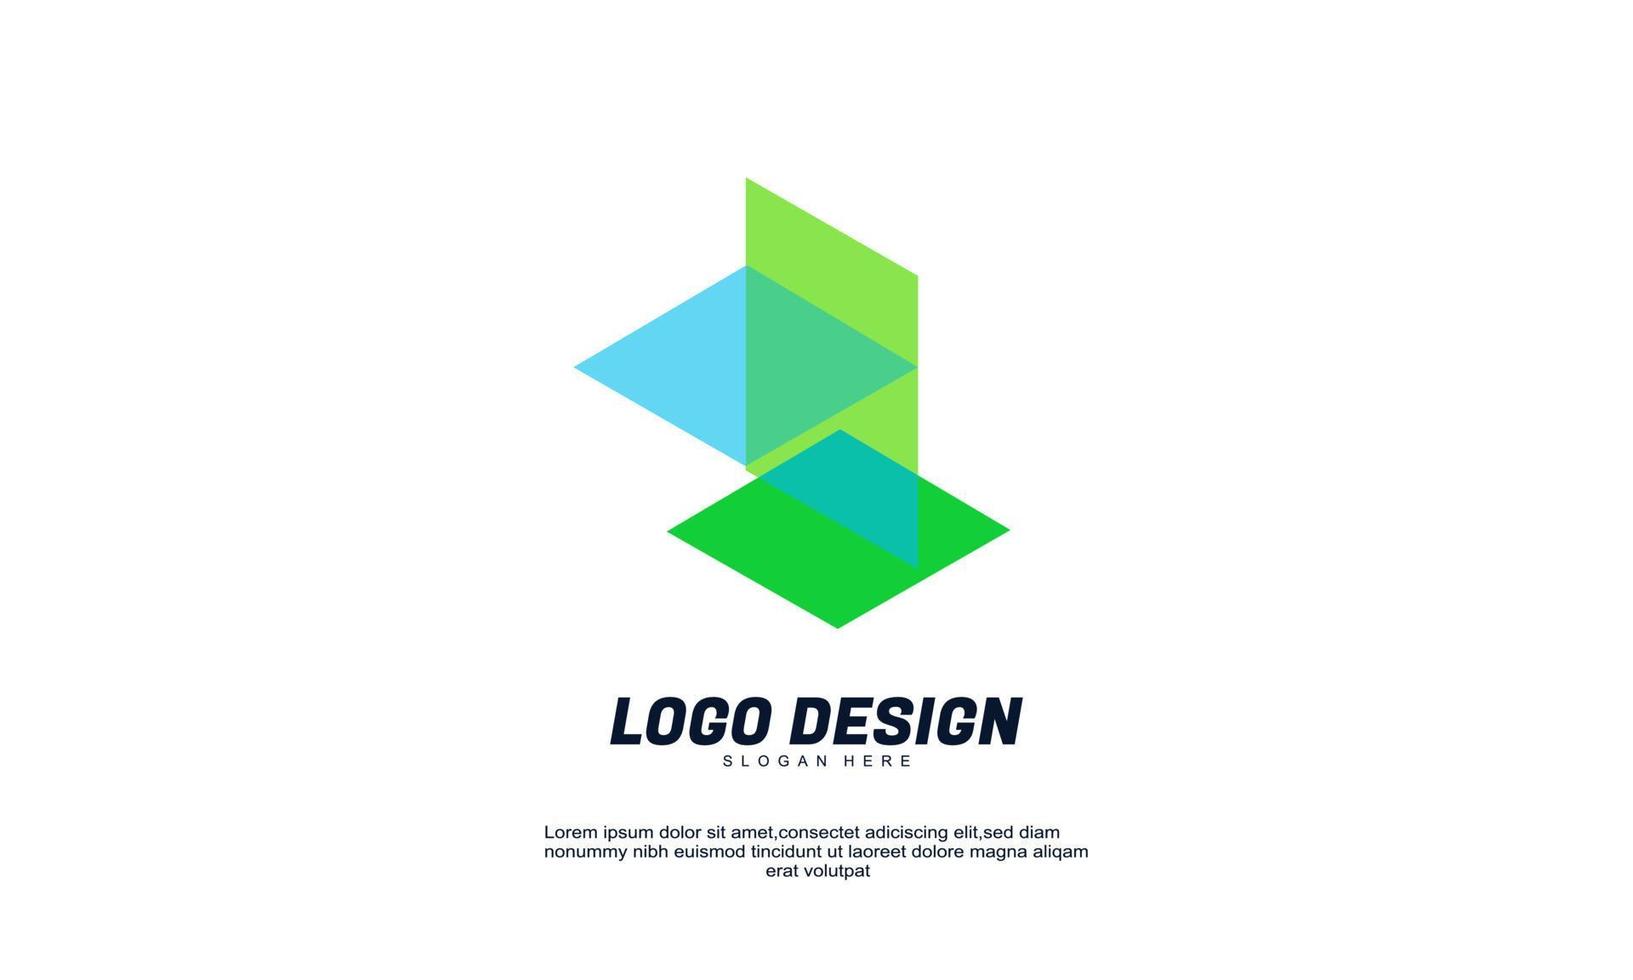 elemento de logotipo de diseño de empresa creativa de vector de stock impresionante con plantilla de tarjeta de visita mejor para identidad y logotipo colorido